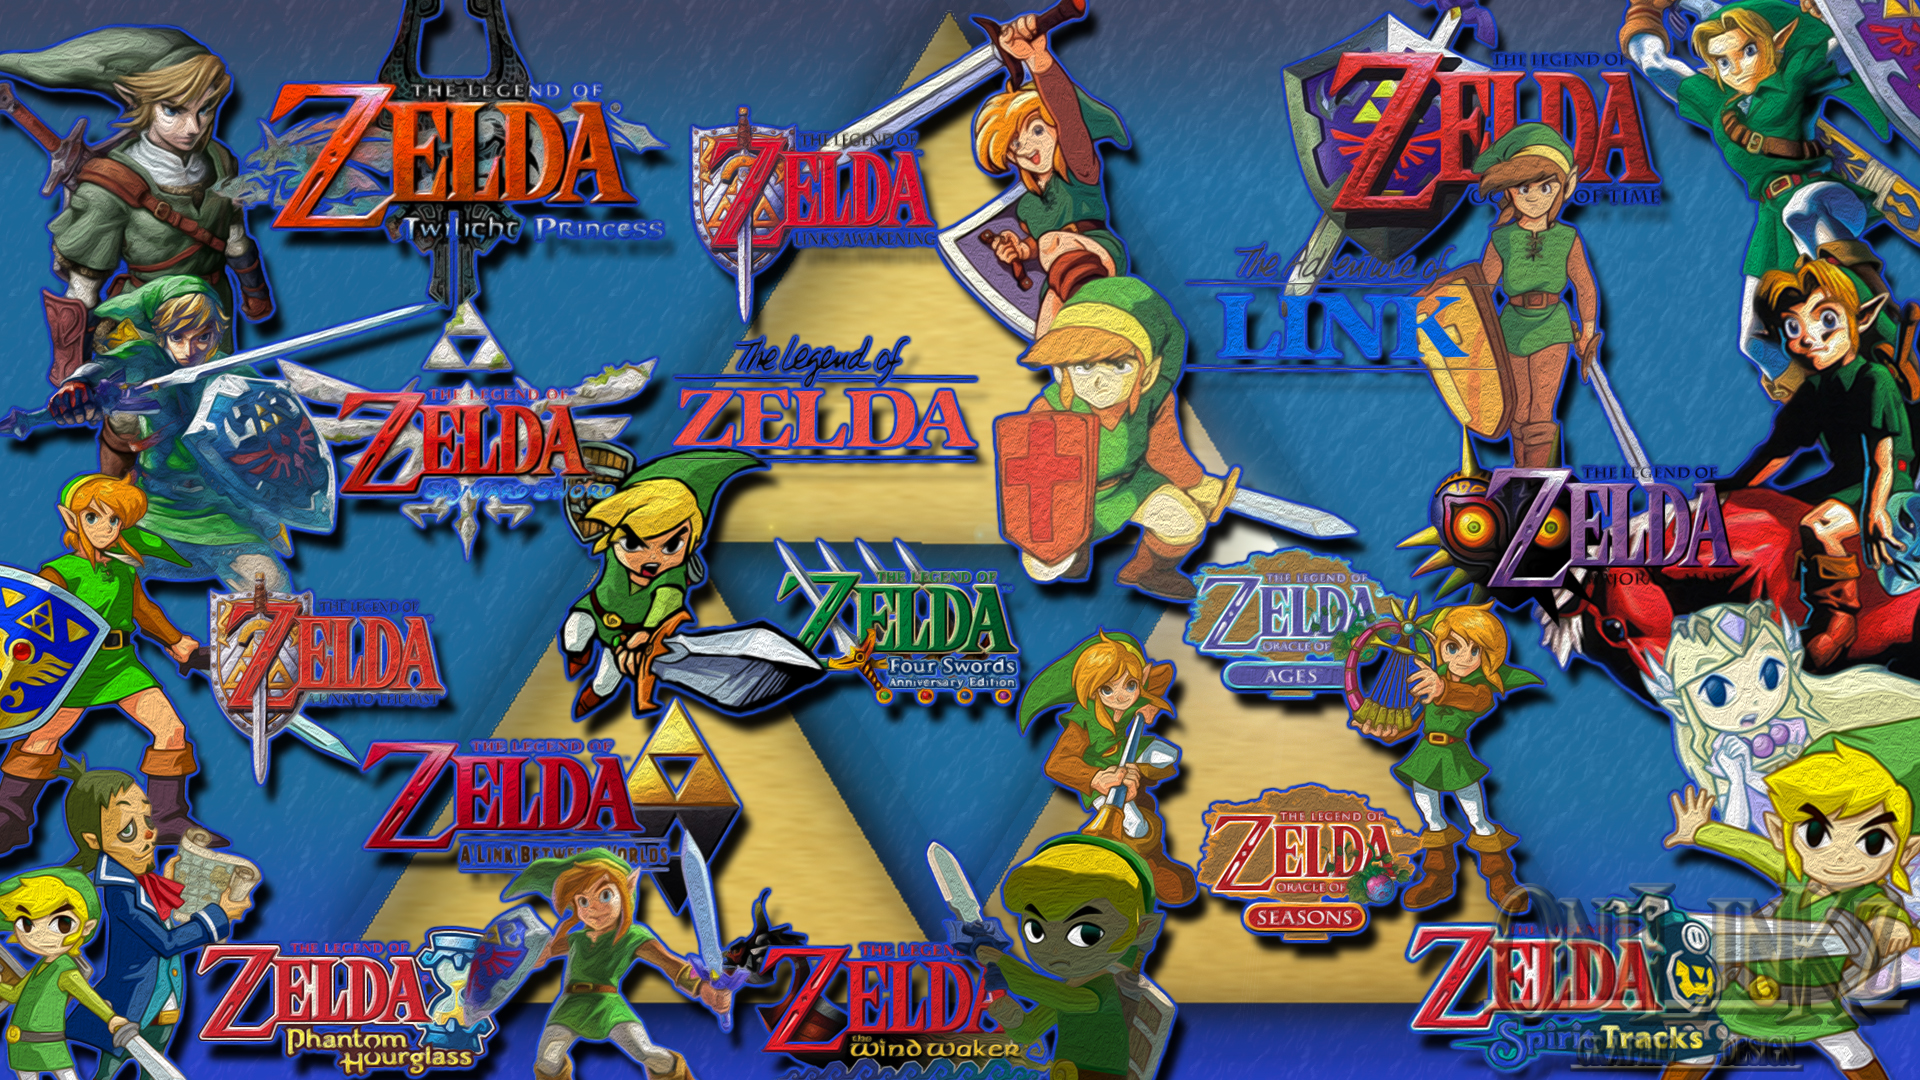 Link And Zelda Wallpapers